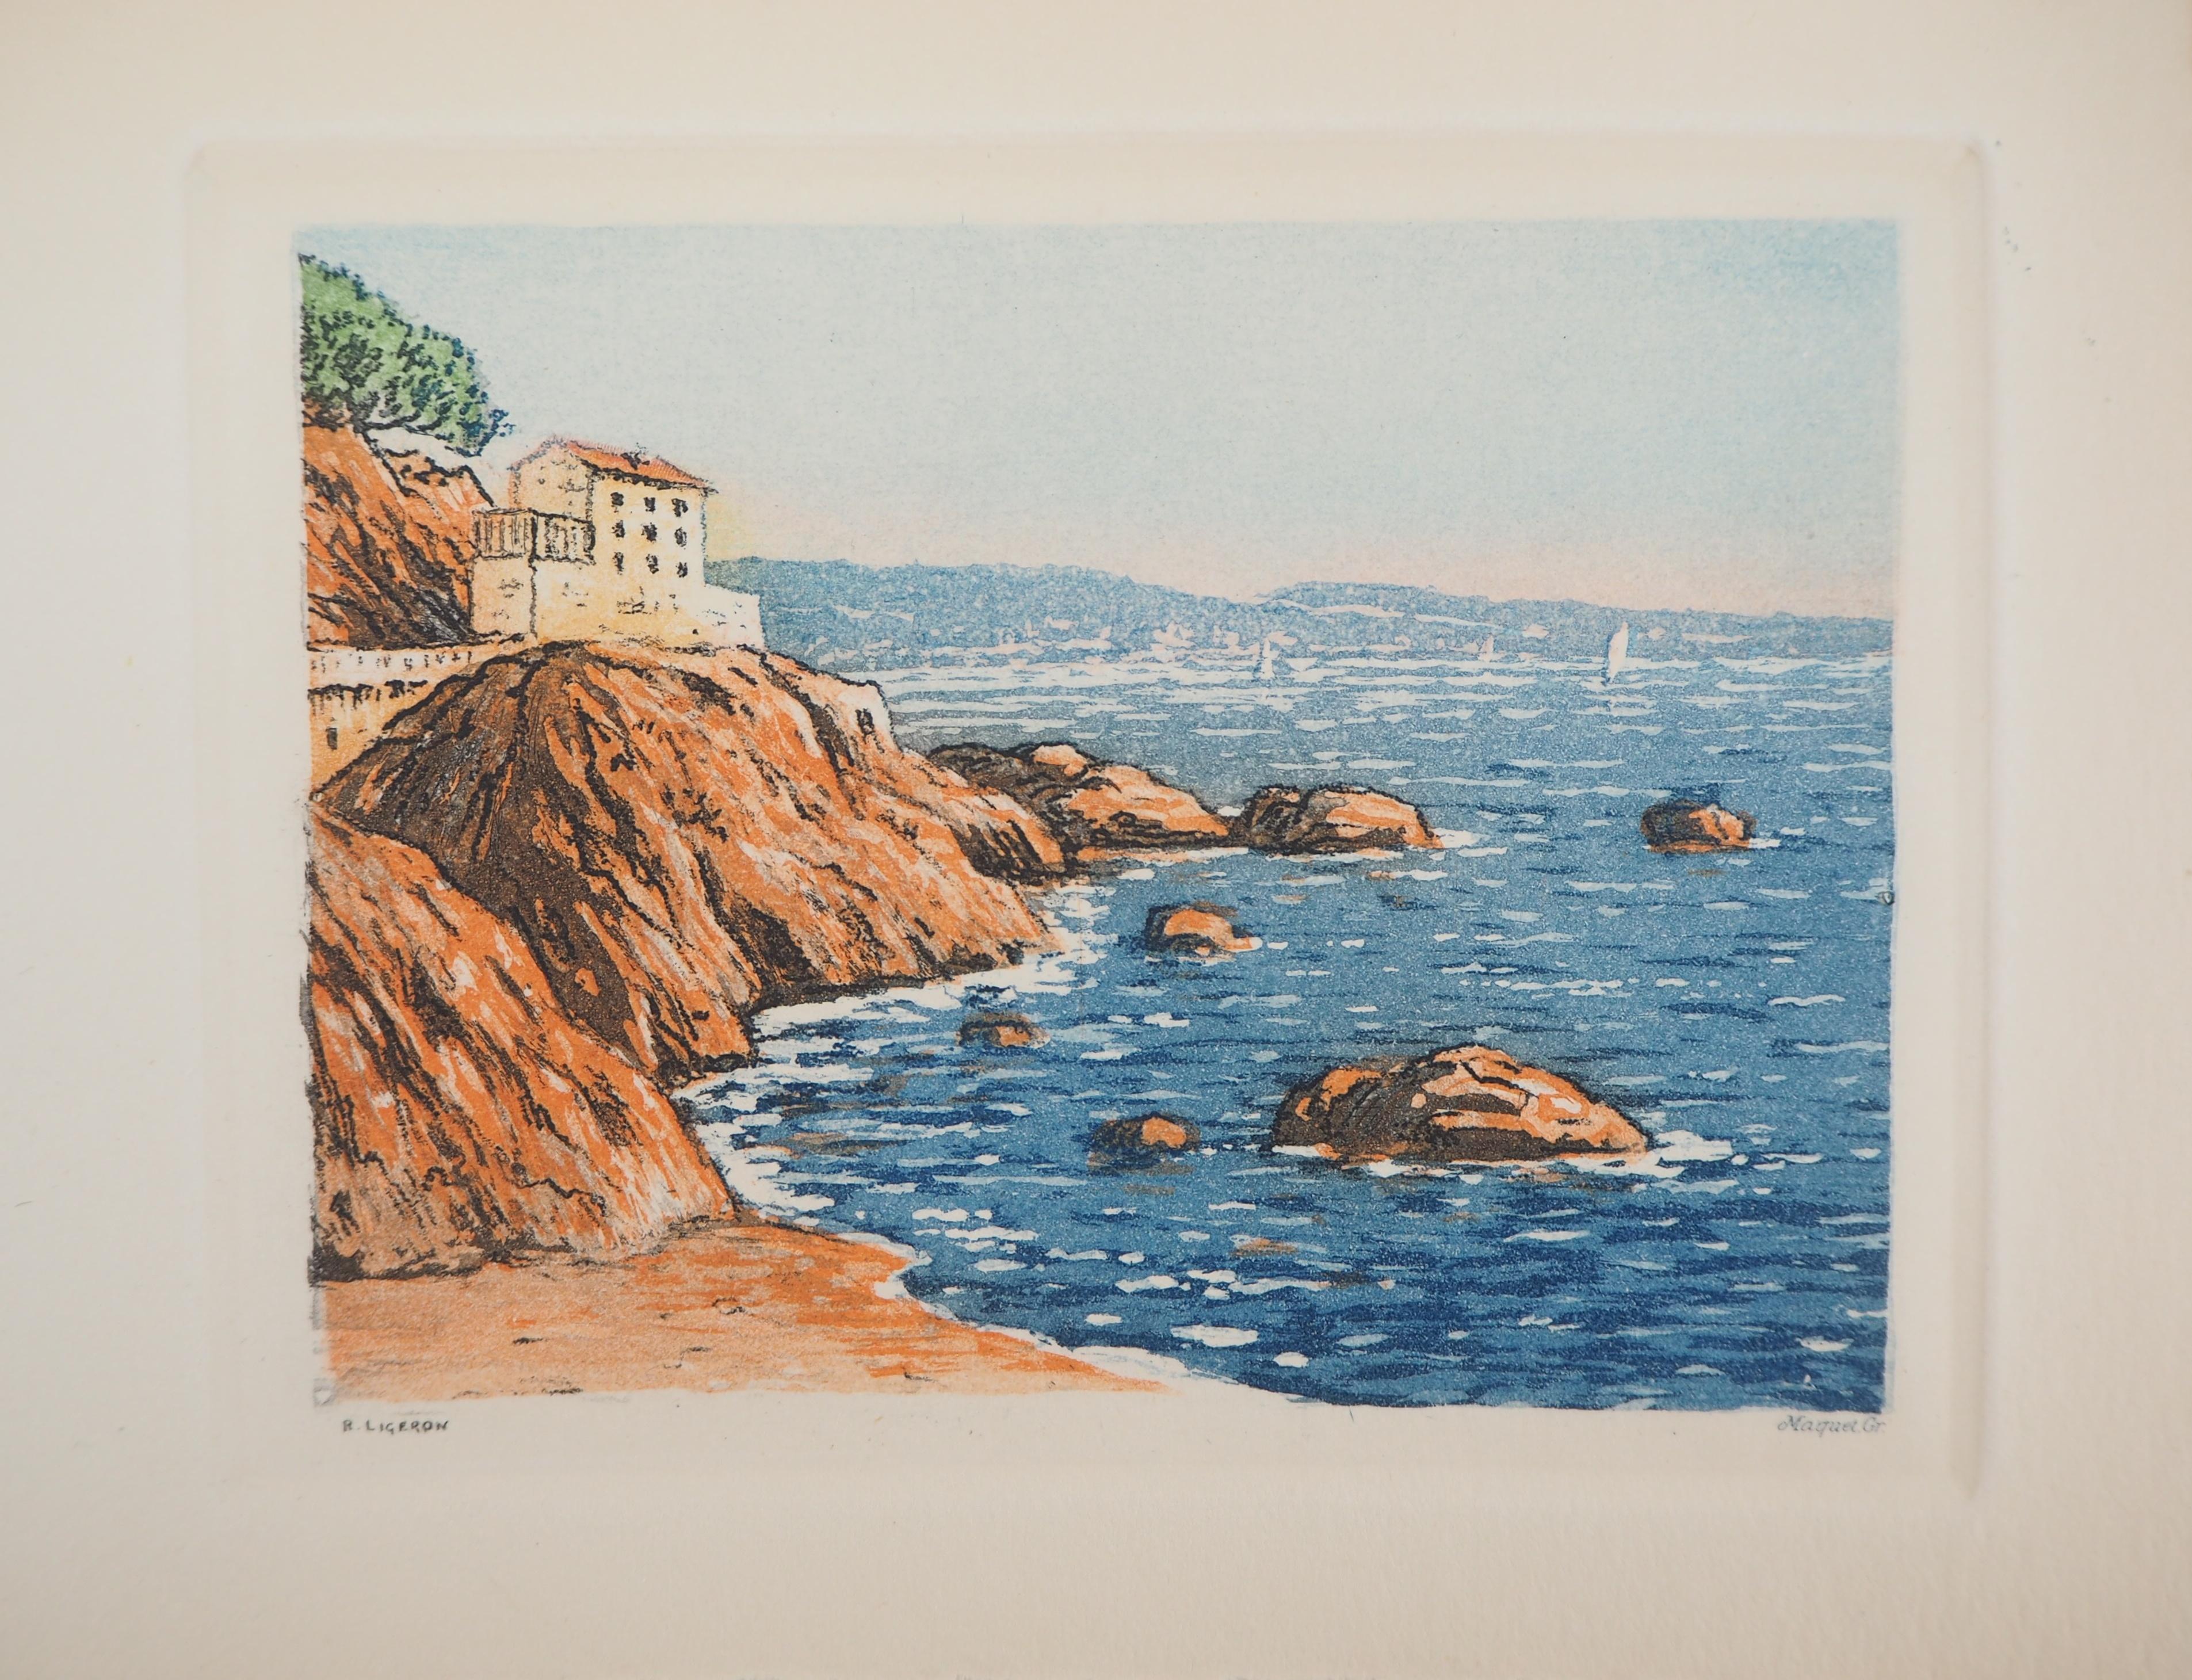 Mediterranean Sea : The house Near the Beach - Original etching